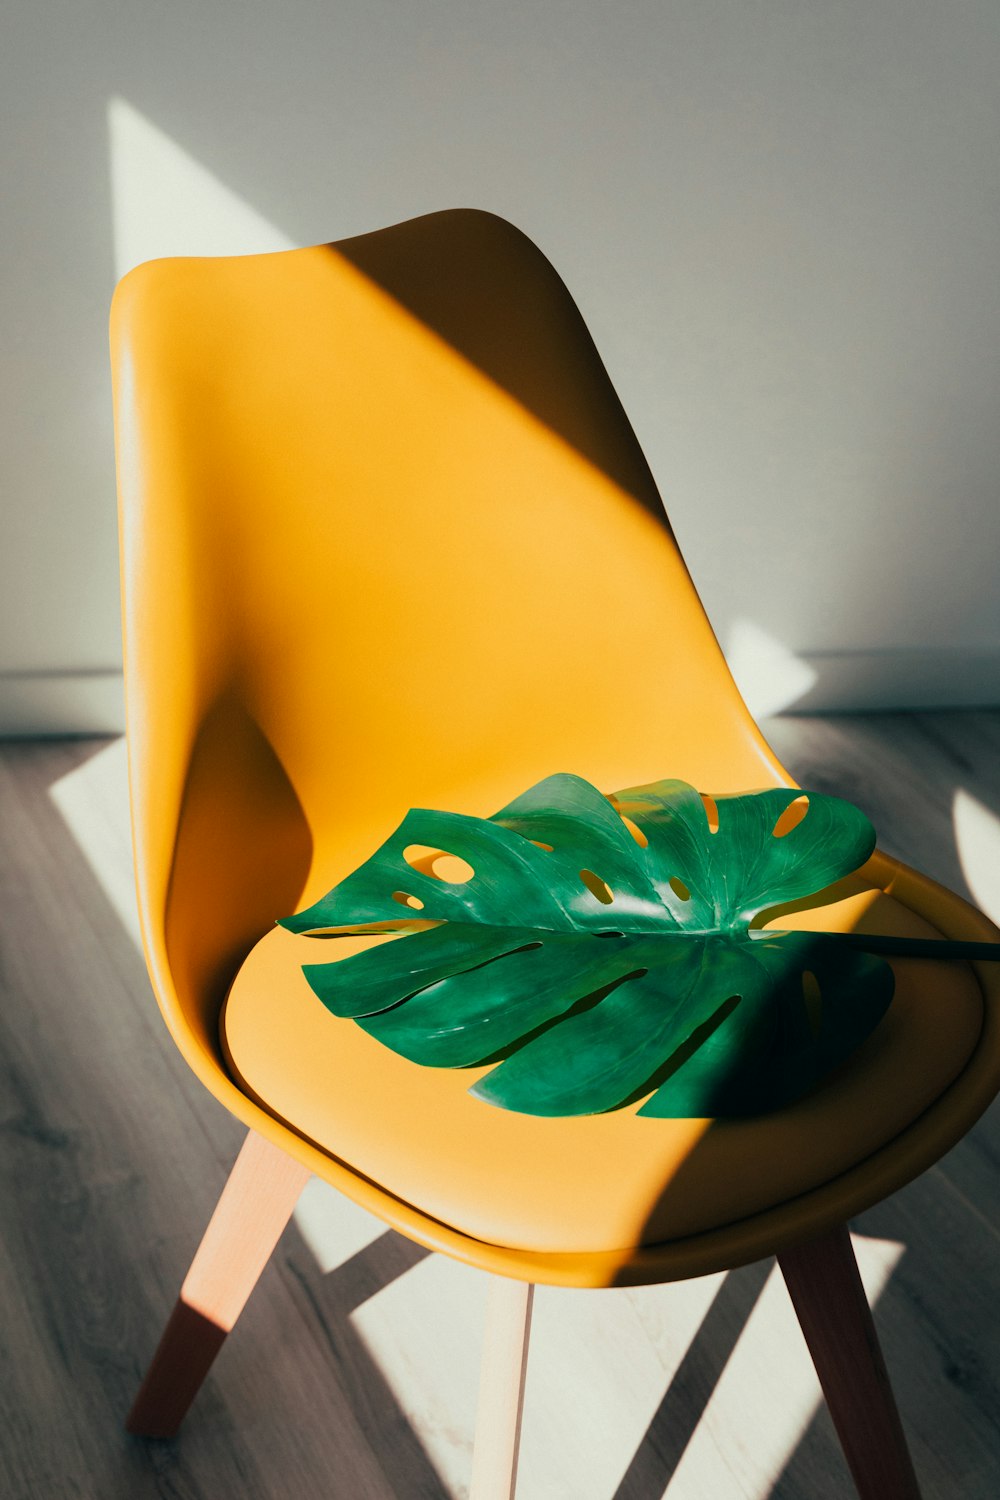 黄色い椅子に緑の葉